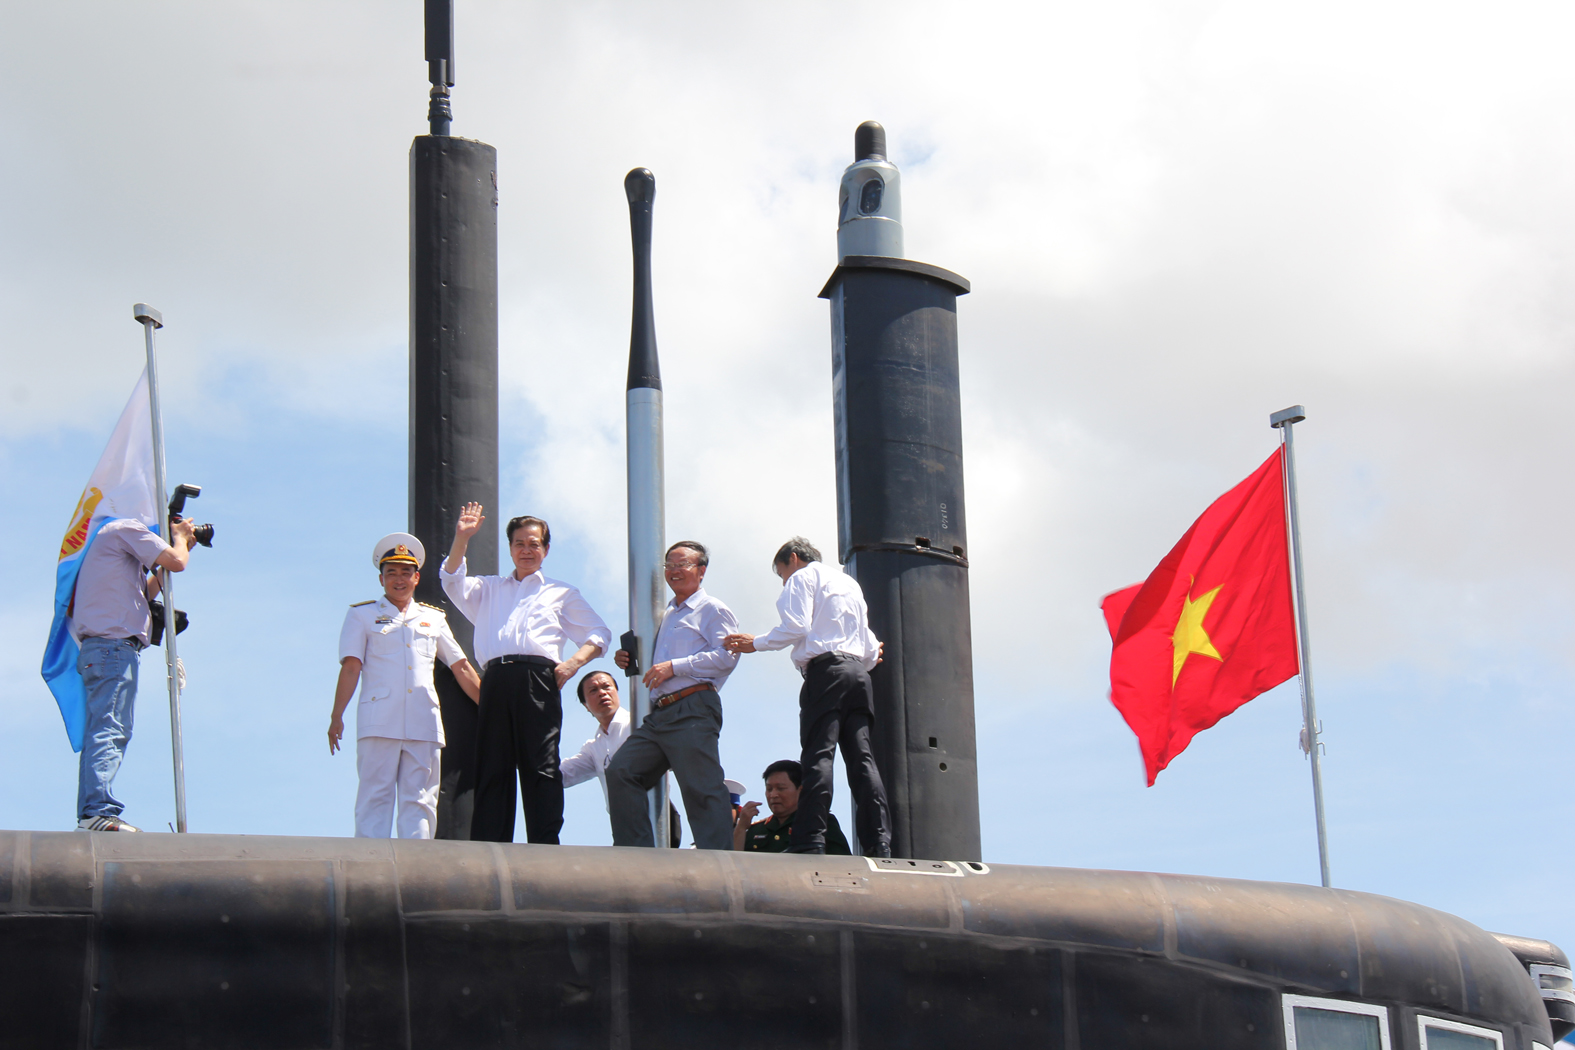 Tàu ngầm Kilo đã trở thành chủ đề nóng hổi trong cộng đồng. Với thiết kế hiện đại và trang bị hệ thống vũ khí tiên tiến, đây là biểu tượng cho sự mạnh mẽ và uy lực của hải quân Việt Nam. Mọi người hãy cùng chiêm ngưỡng hình ảnh của tàu ngầm Kilo và cảm nhận sự thần thái của mình.